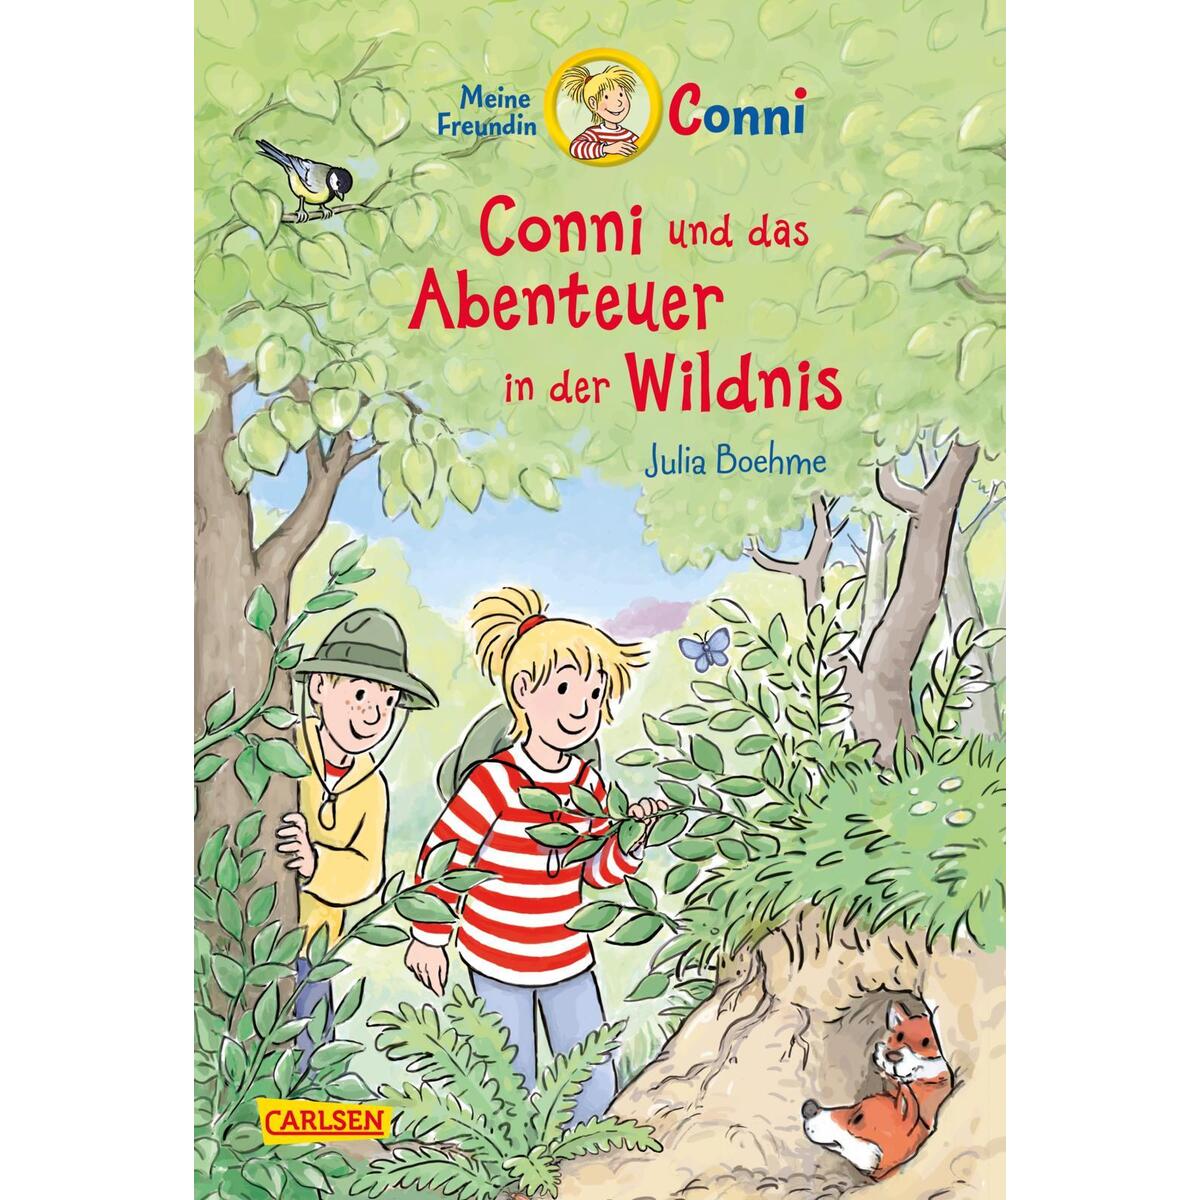 Conni Erzählbände 43: Conni und das Abenteuer in der Wildnis von Carlsen Verlag GmbH